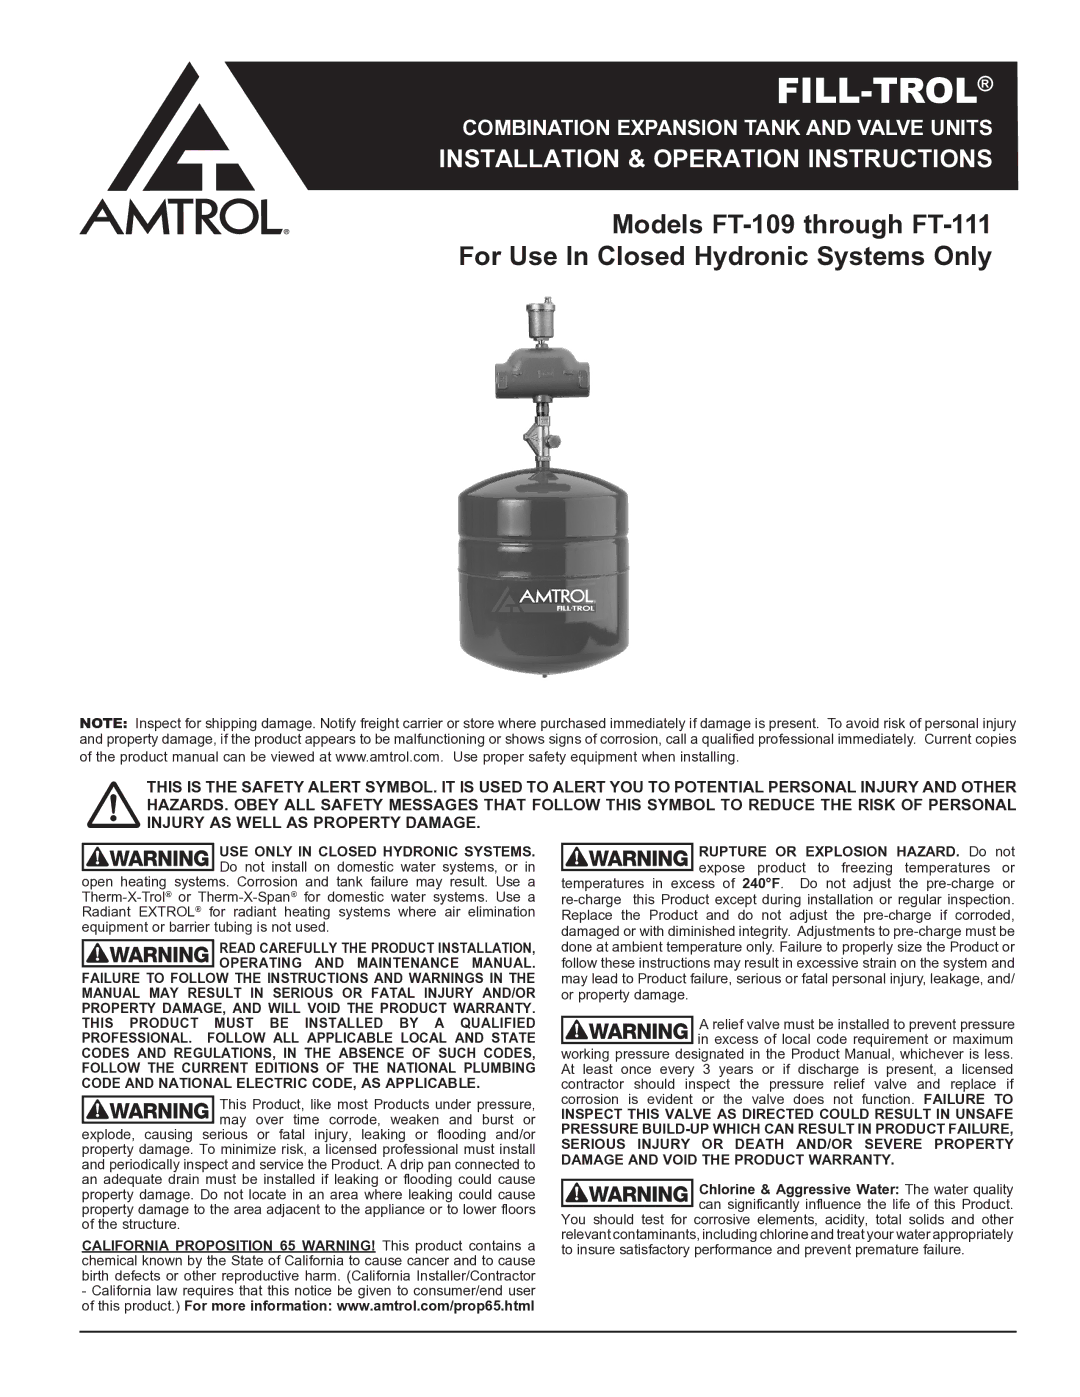 Amtrol FT-109 THROUGH FT-111 warranty Fill-Trol 